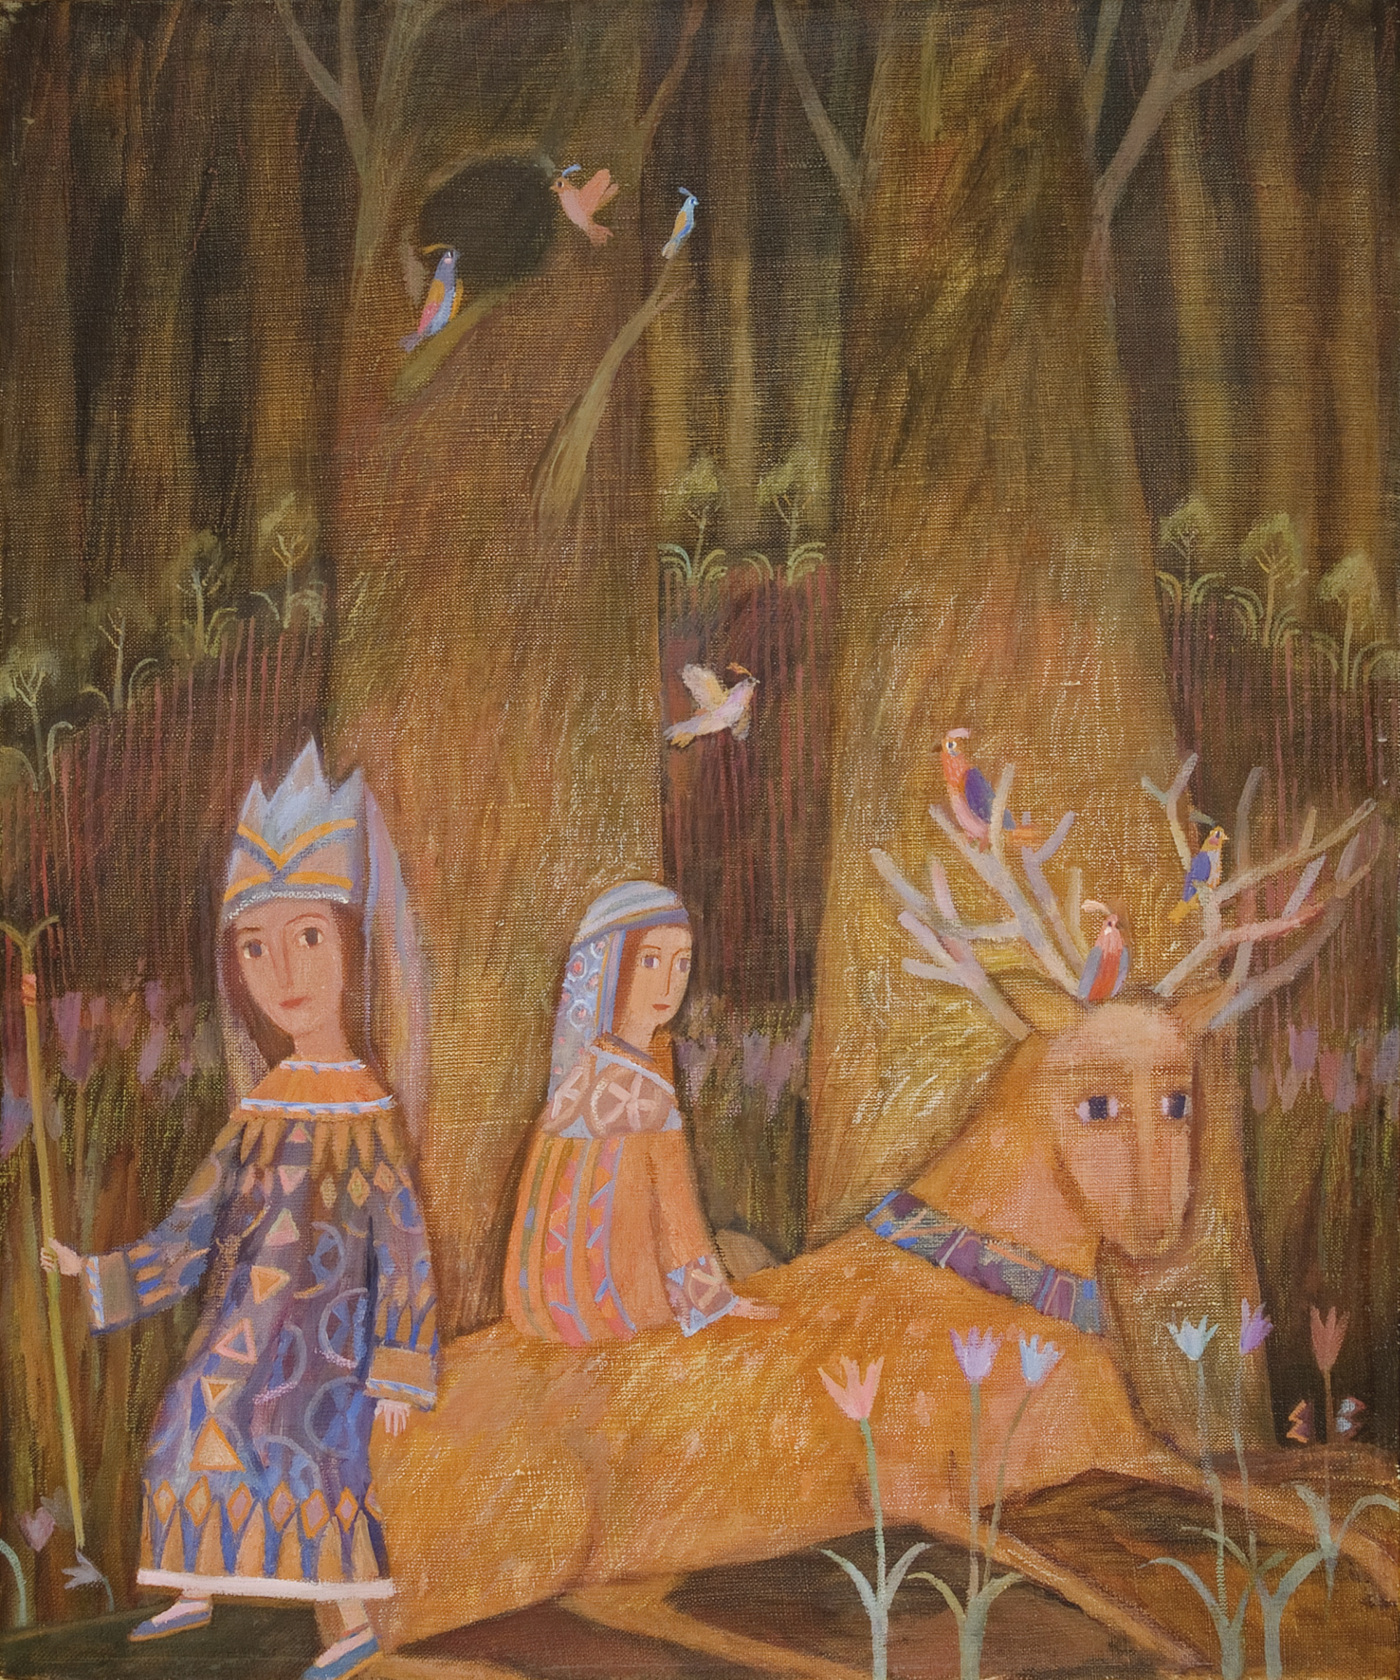    Мир сказки Елены Зарубовой | Отдых под деревьями